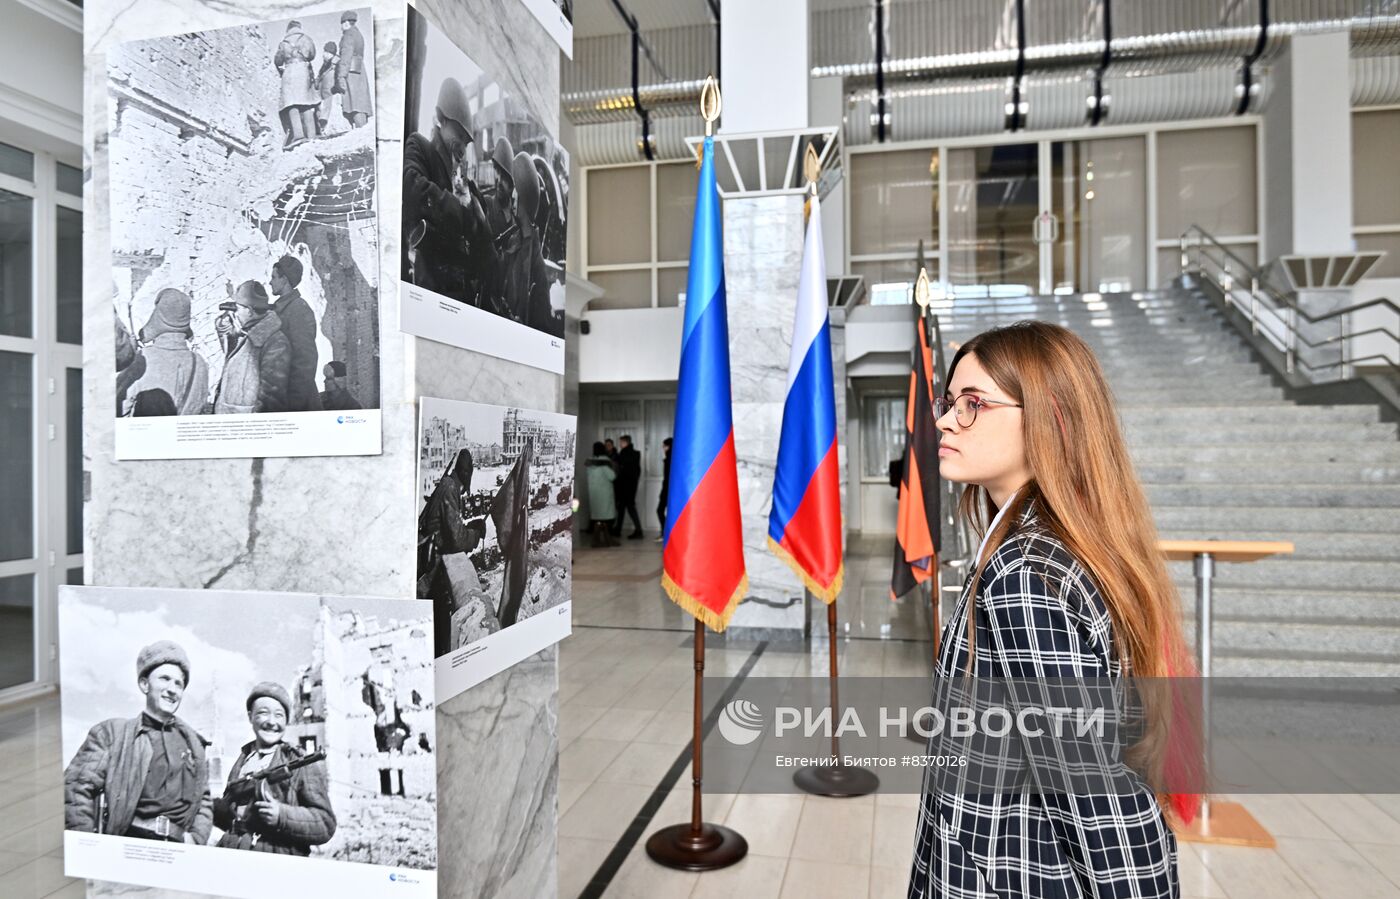 Открытие фотовыставки "Освобождение. Луганск"